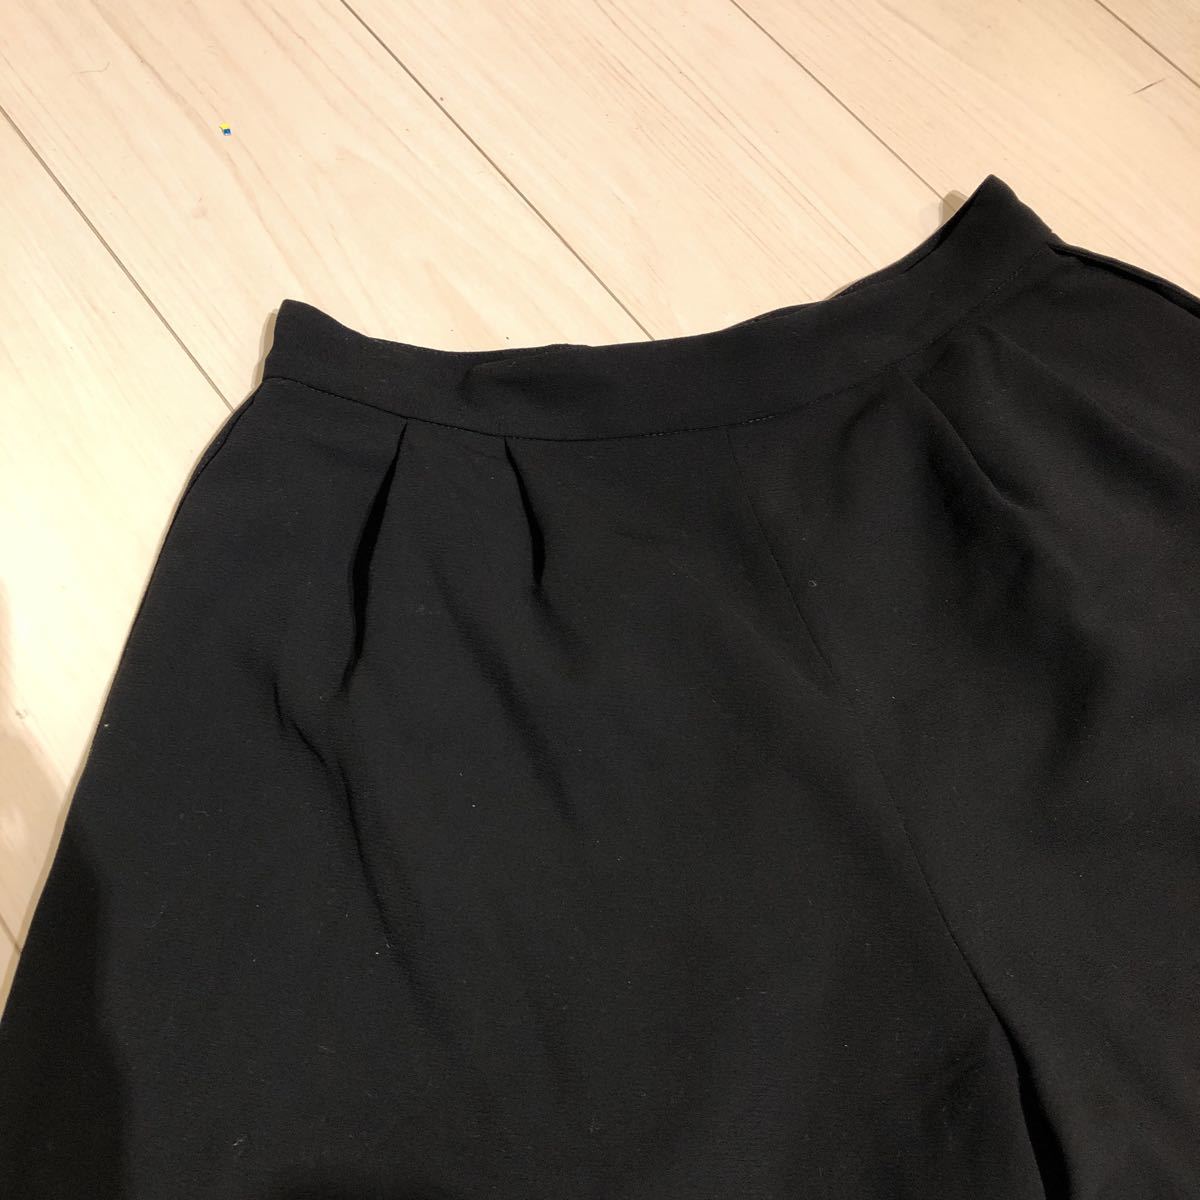 31 Sons de mode( тигр nte Anson du режим ) шорты юбка-брюки черный юбка-брюки юбка 